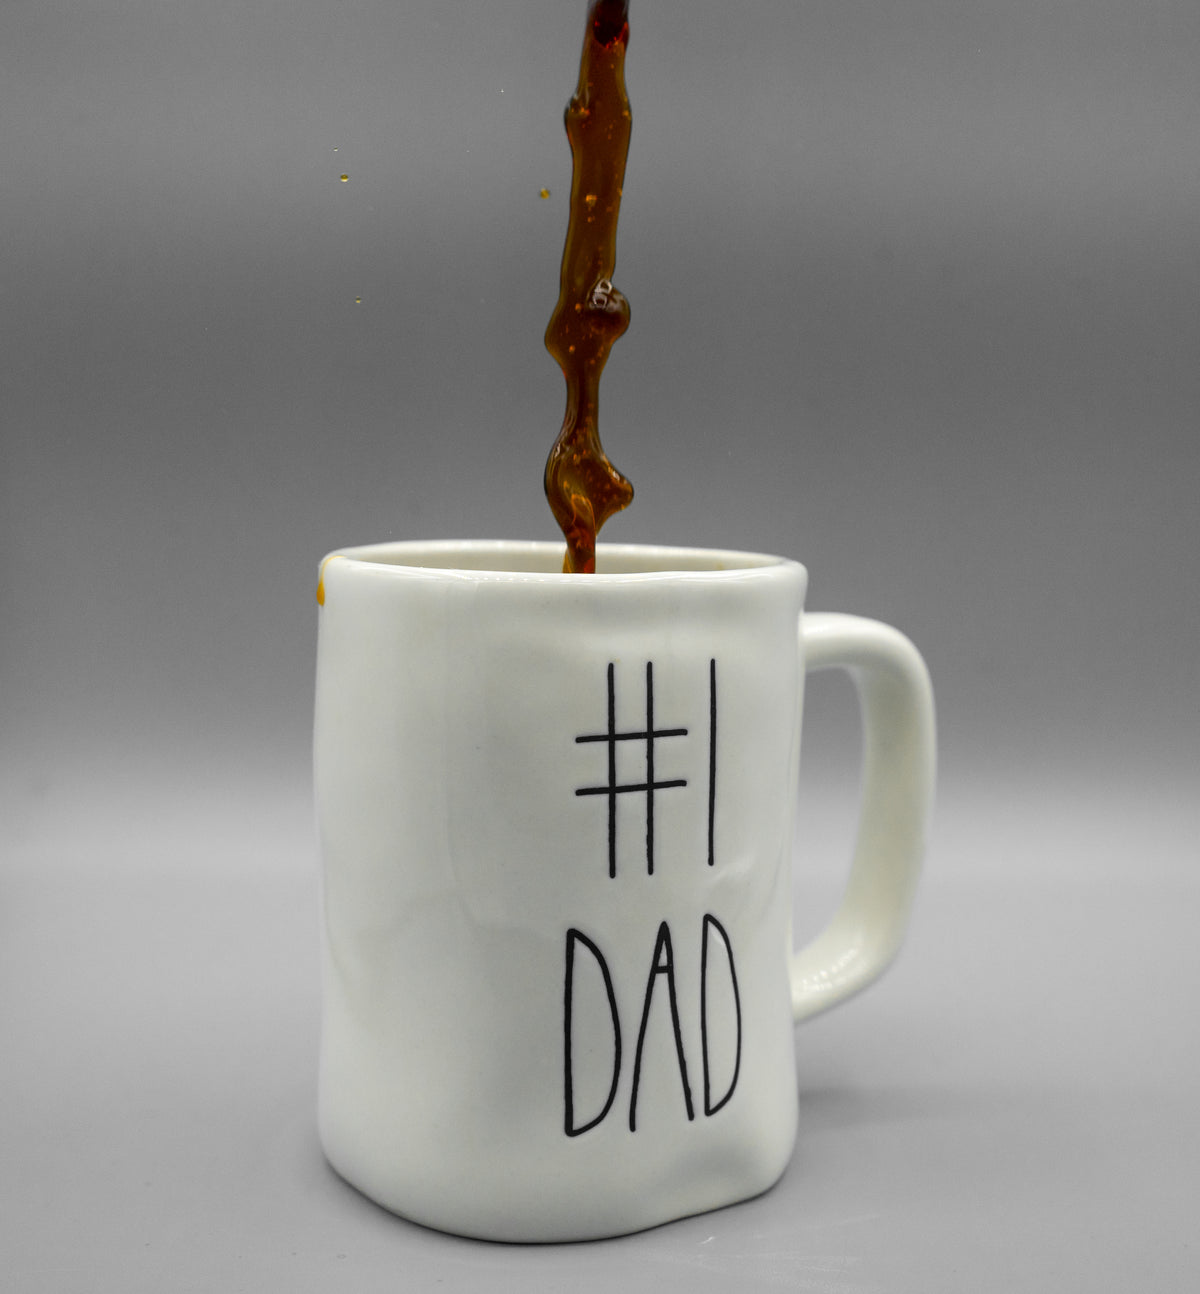 #1爸爸咖啡杯